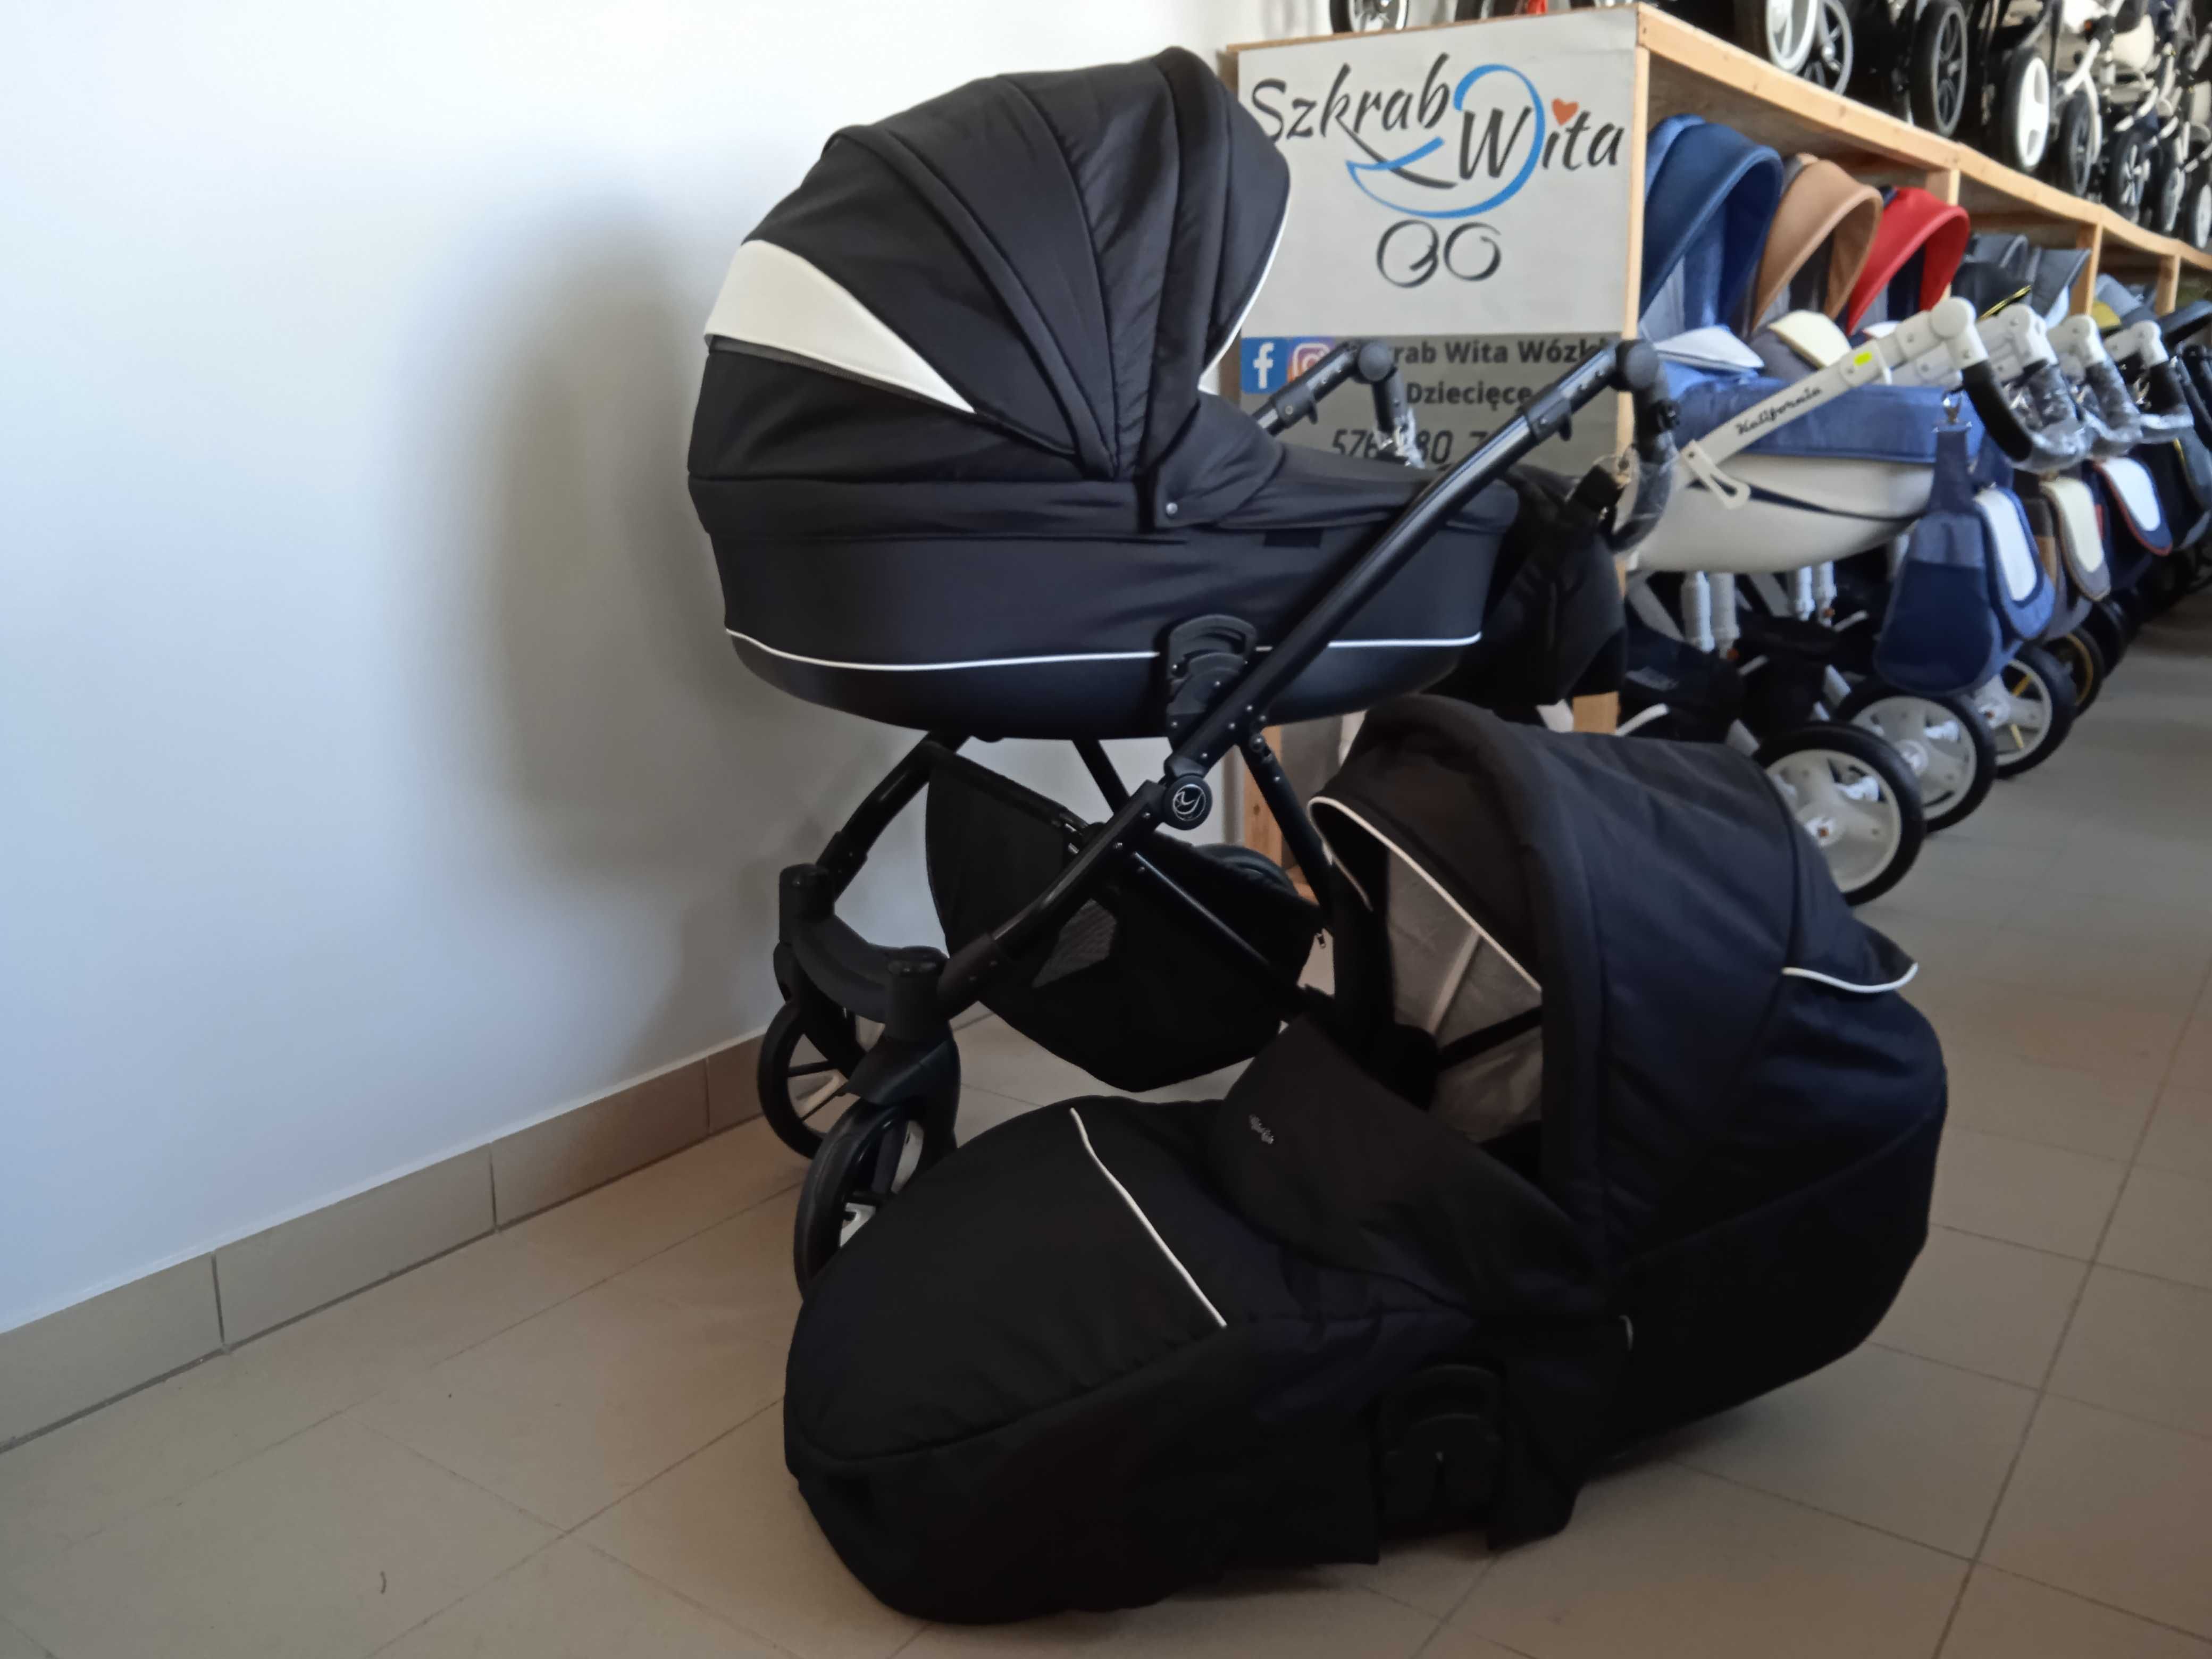 Wózek dziecięcy Berlinetta Milu Kids gwarancja wysyłka SZKRABWITA